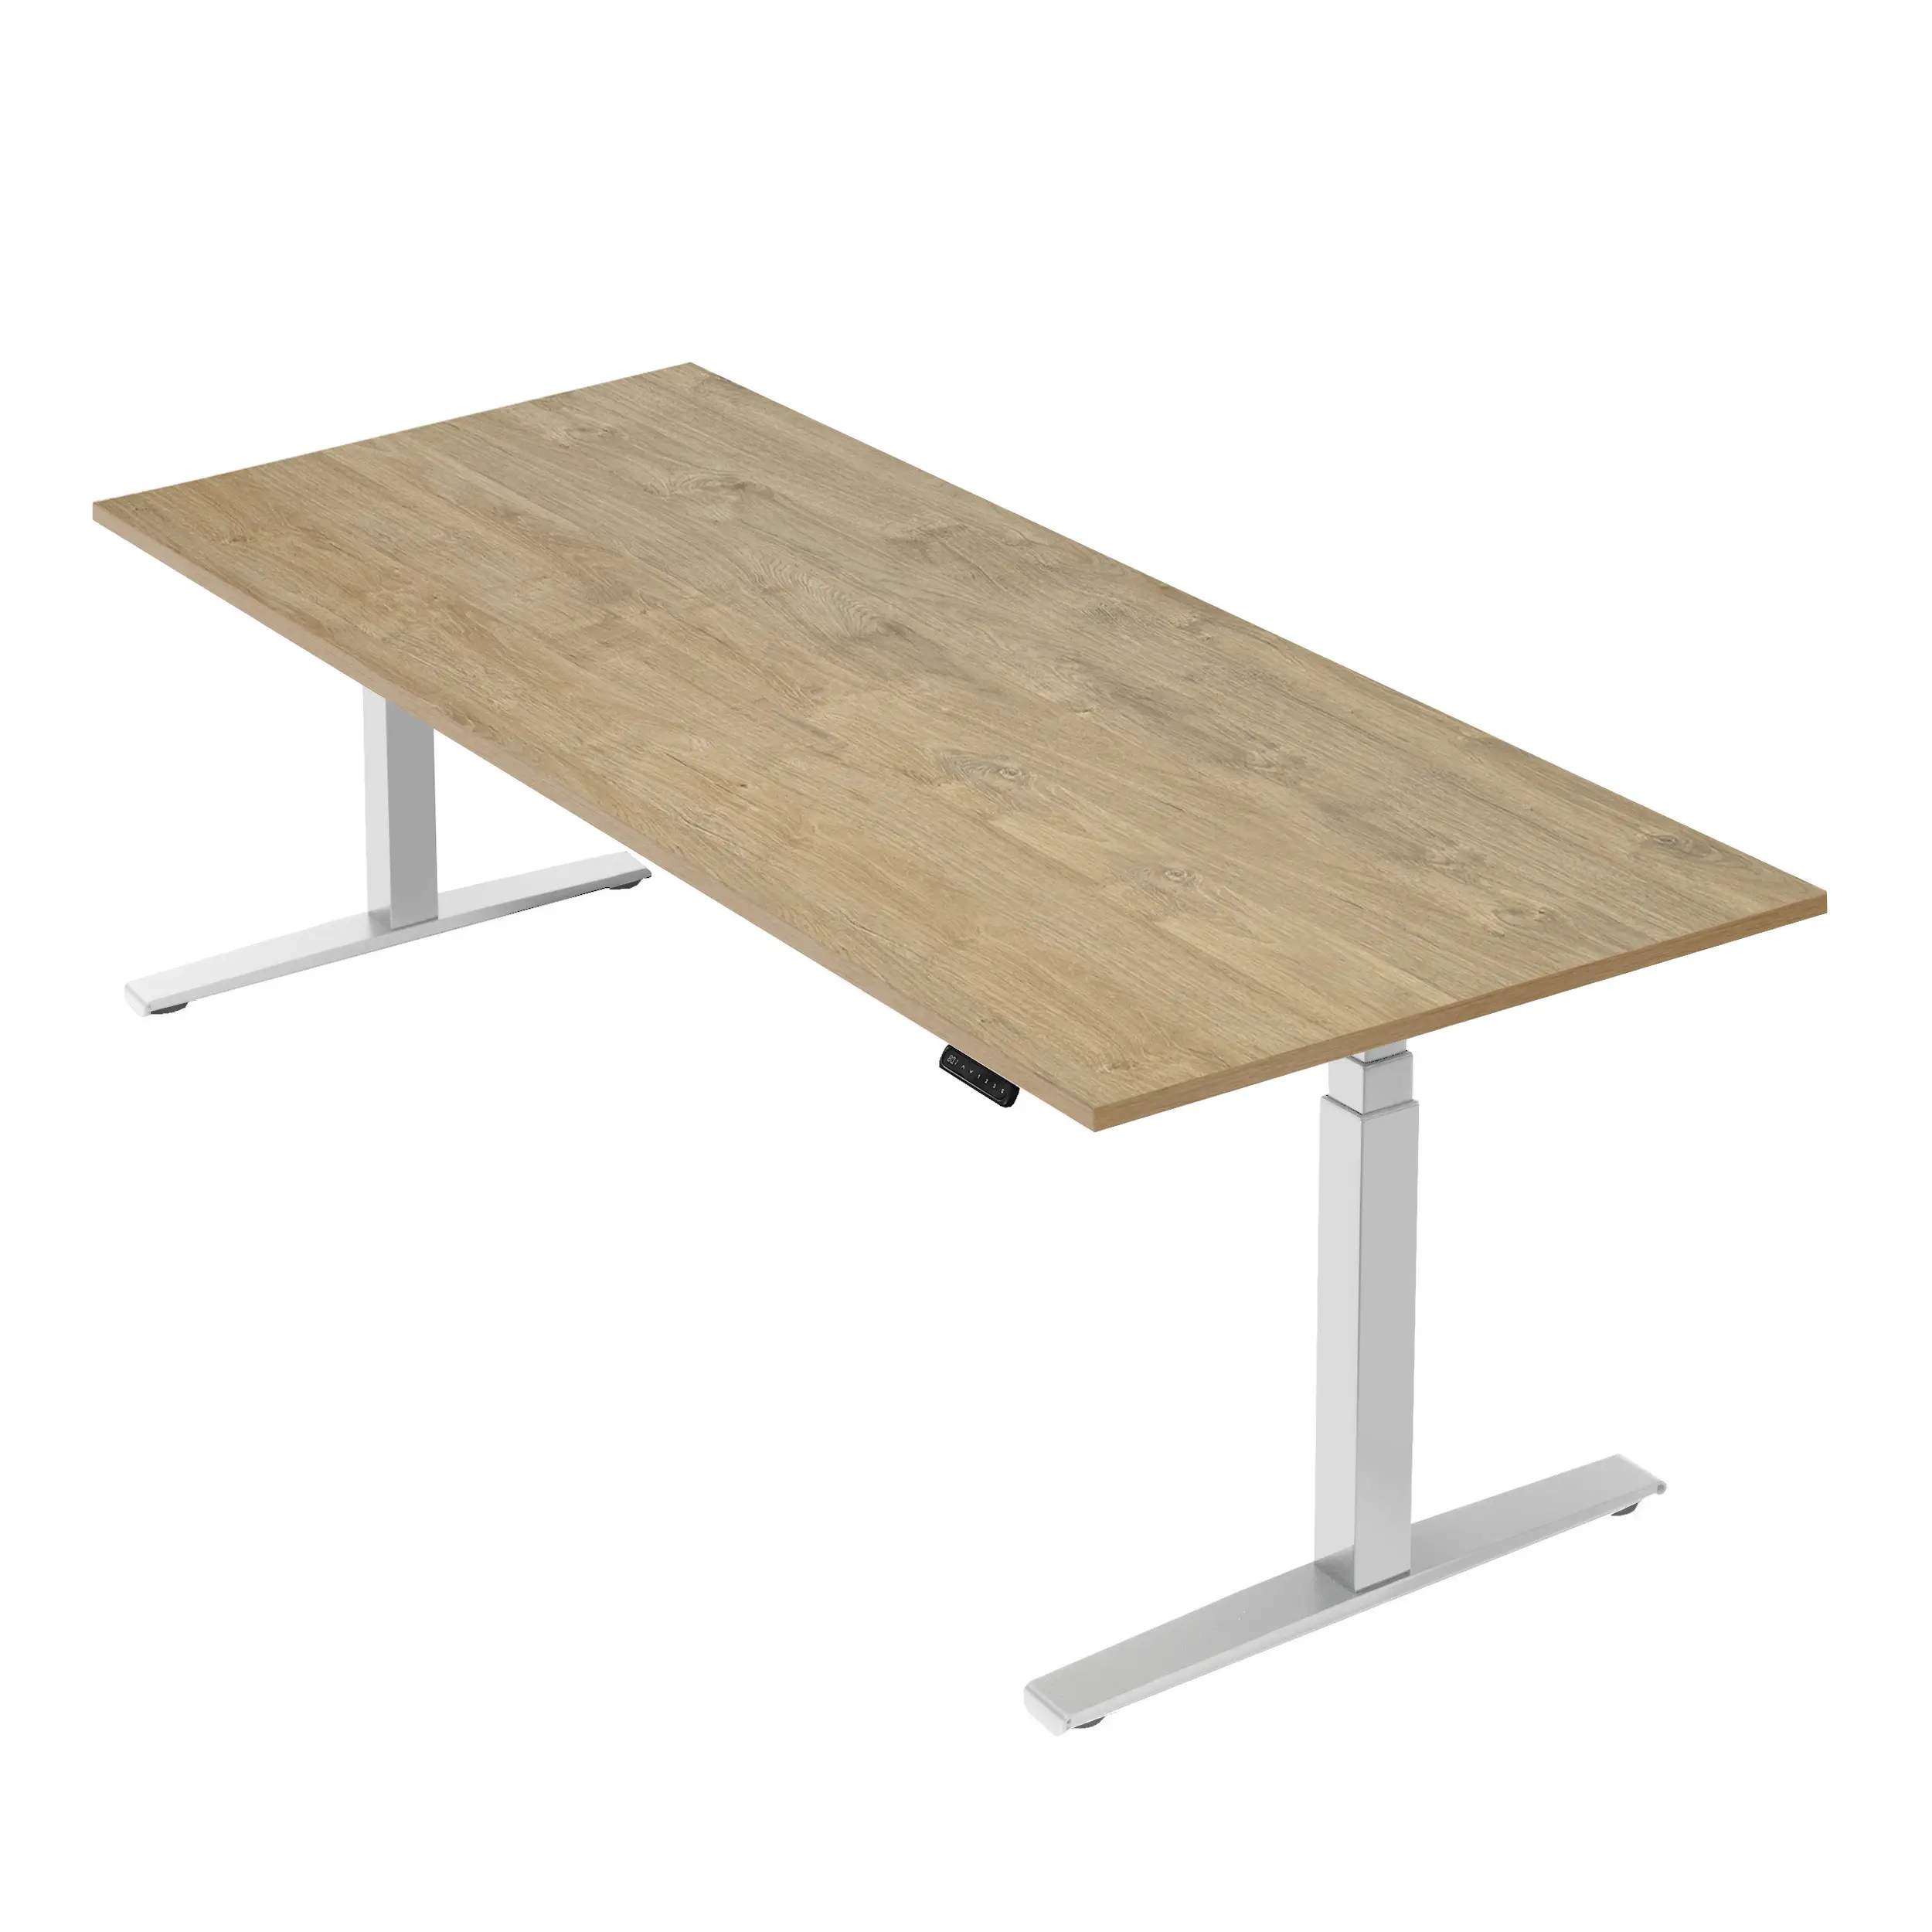 H枚henverstellbarer Tisch Basic Line | Schreibtische